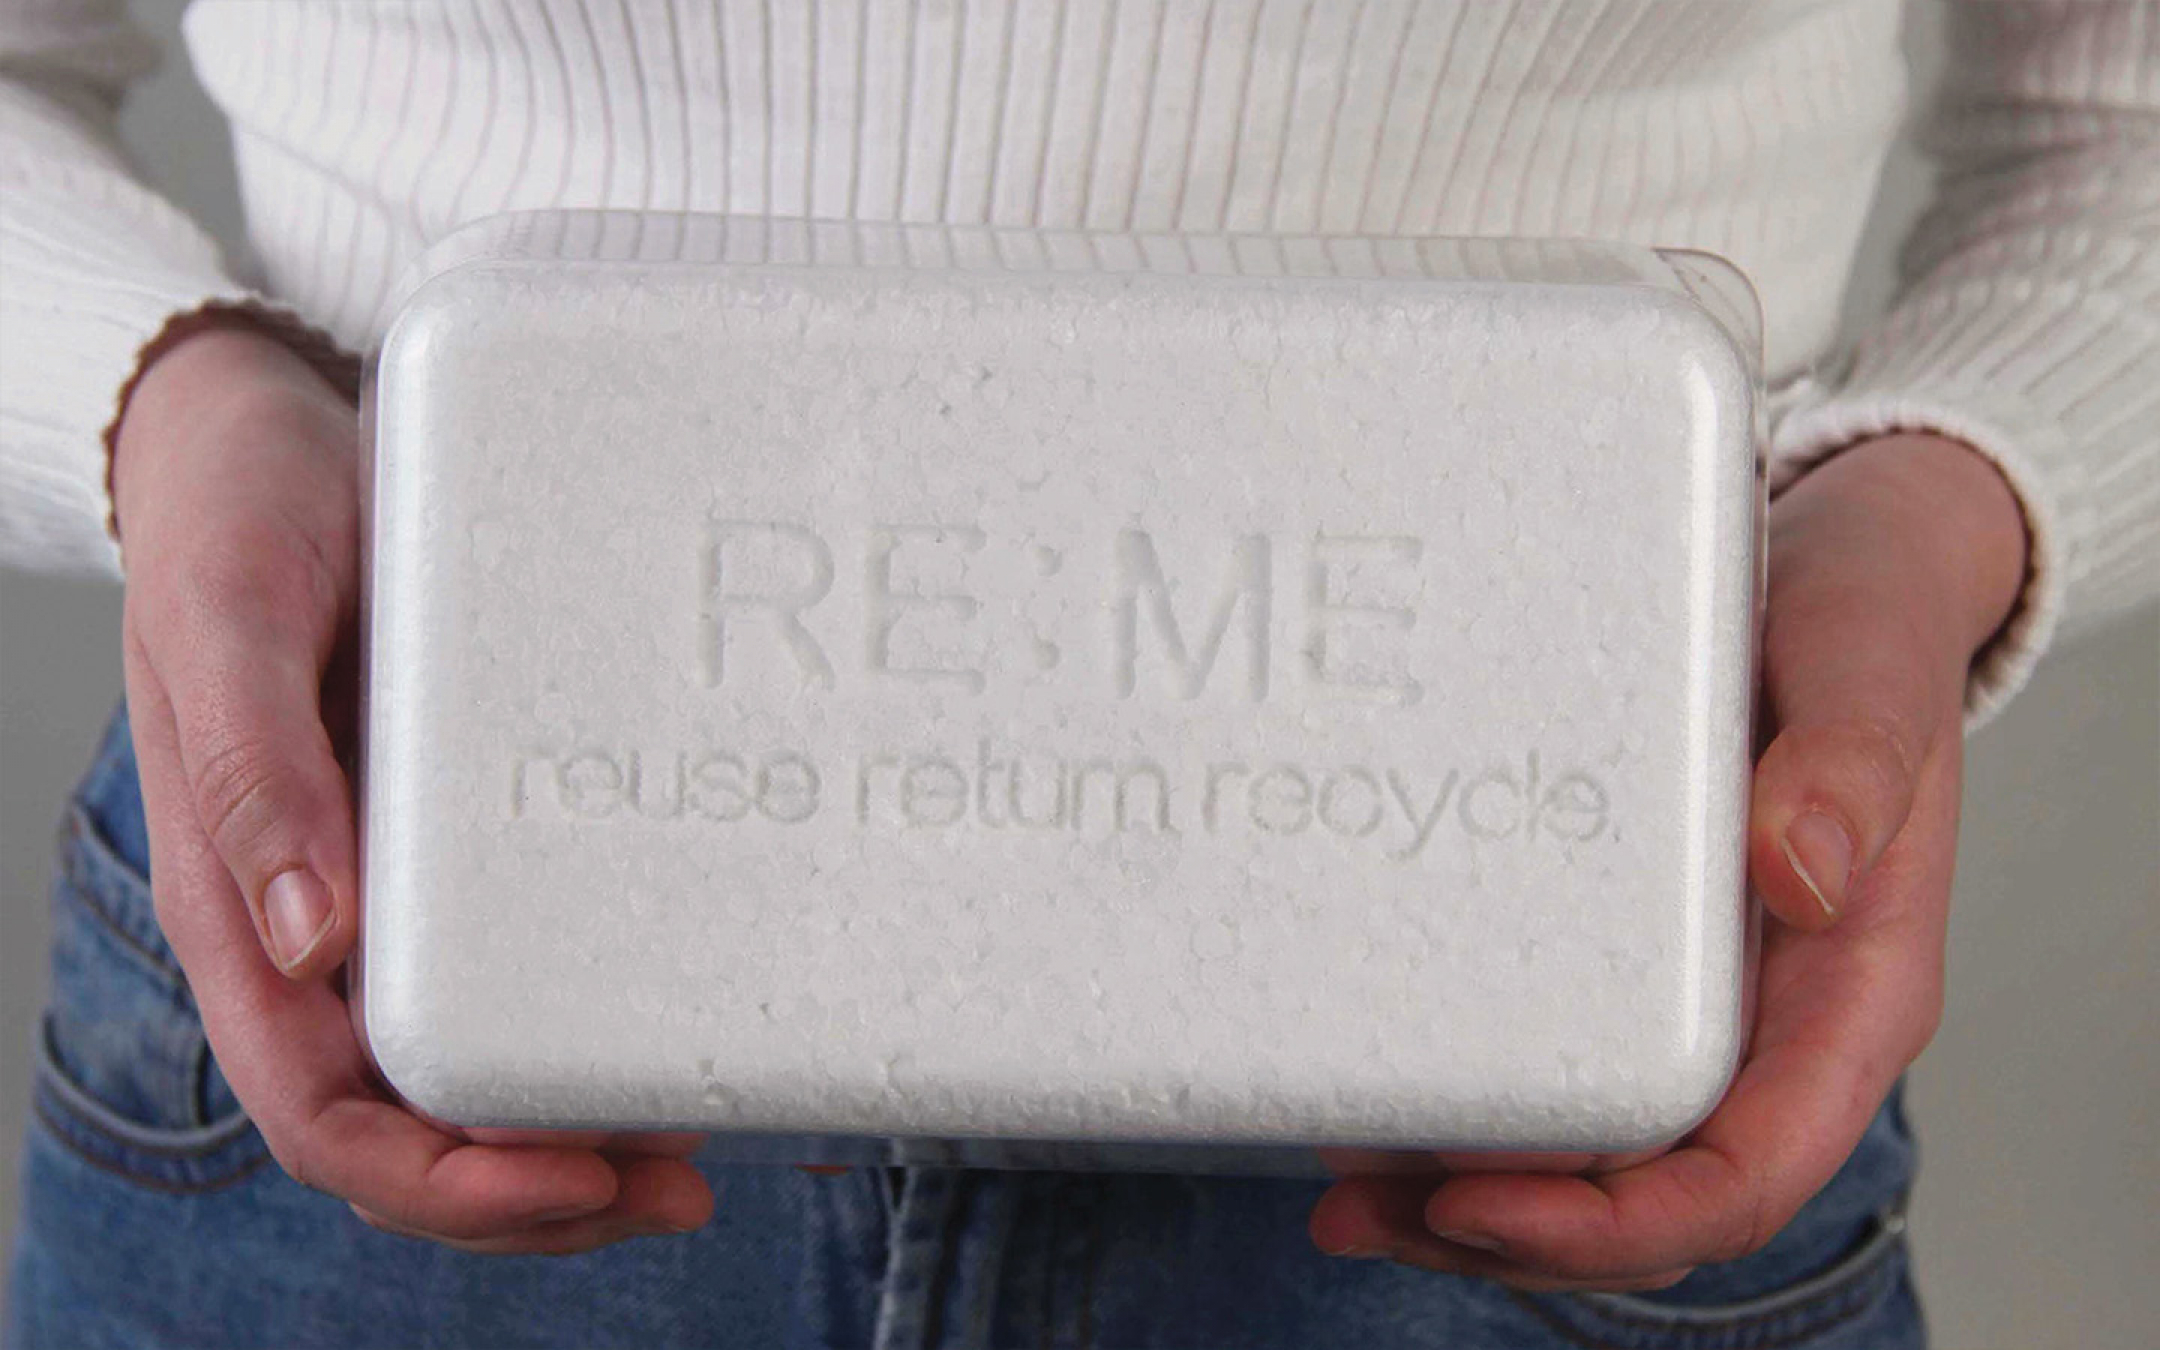 RE:ME reuse return recycle